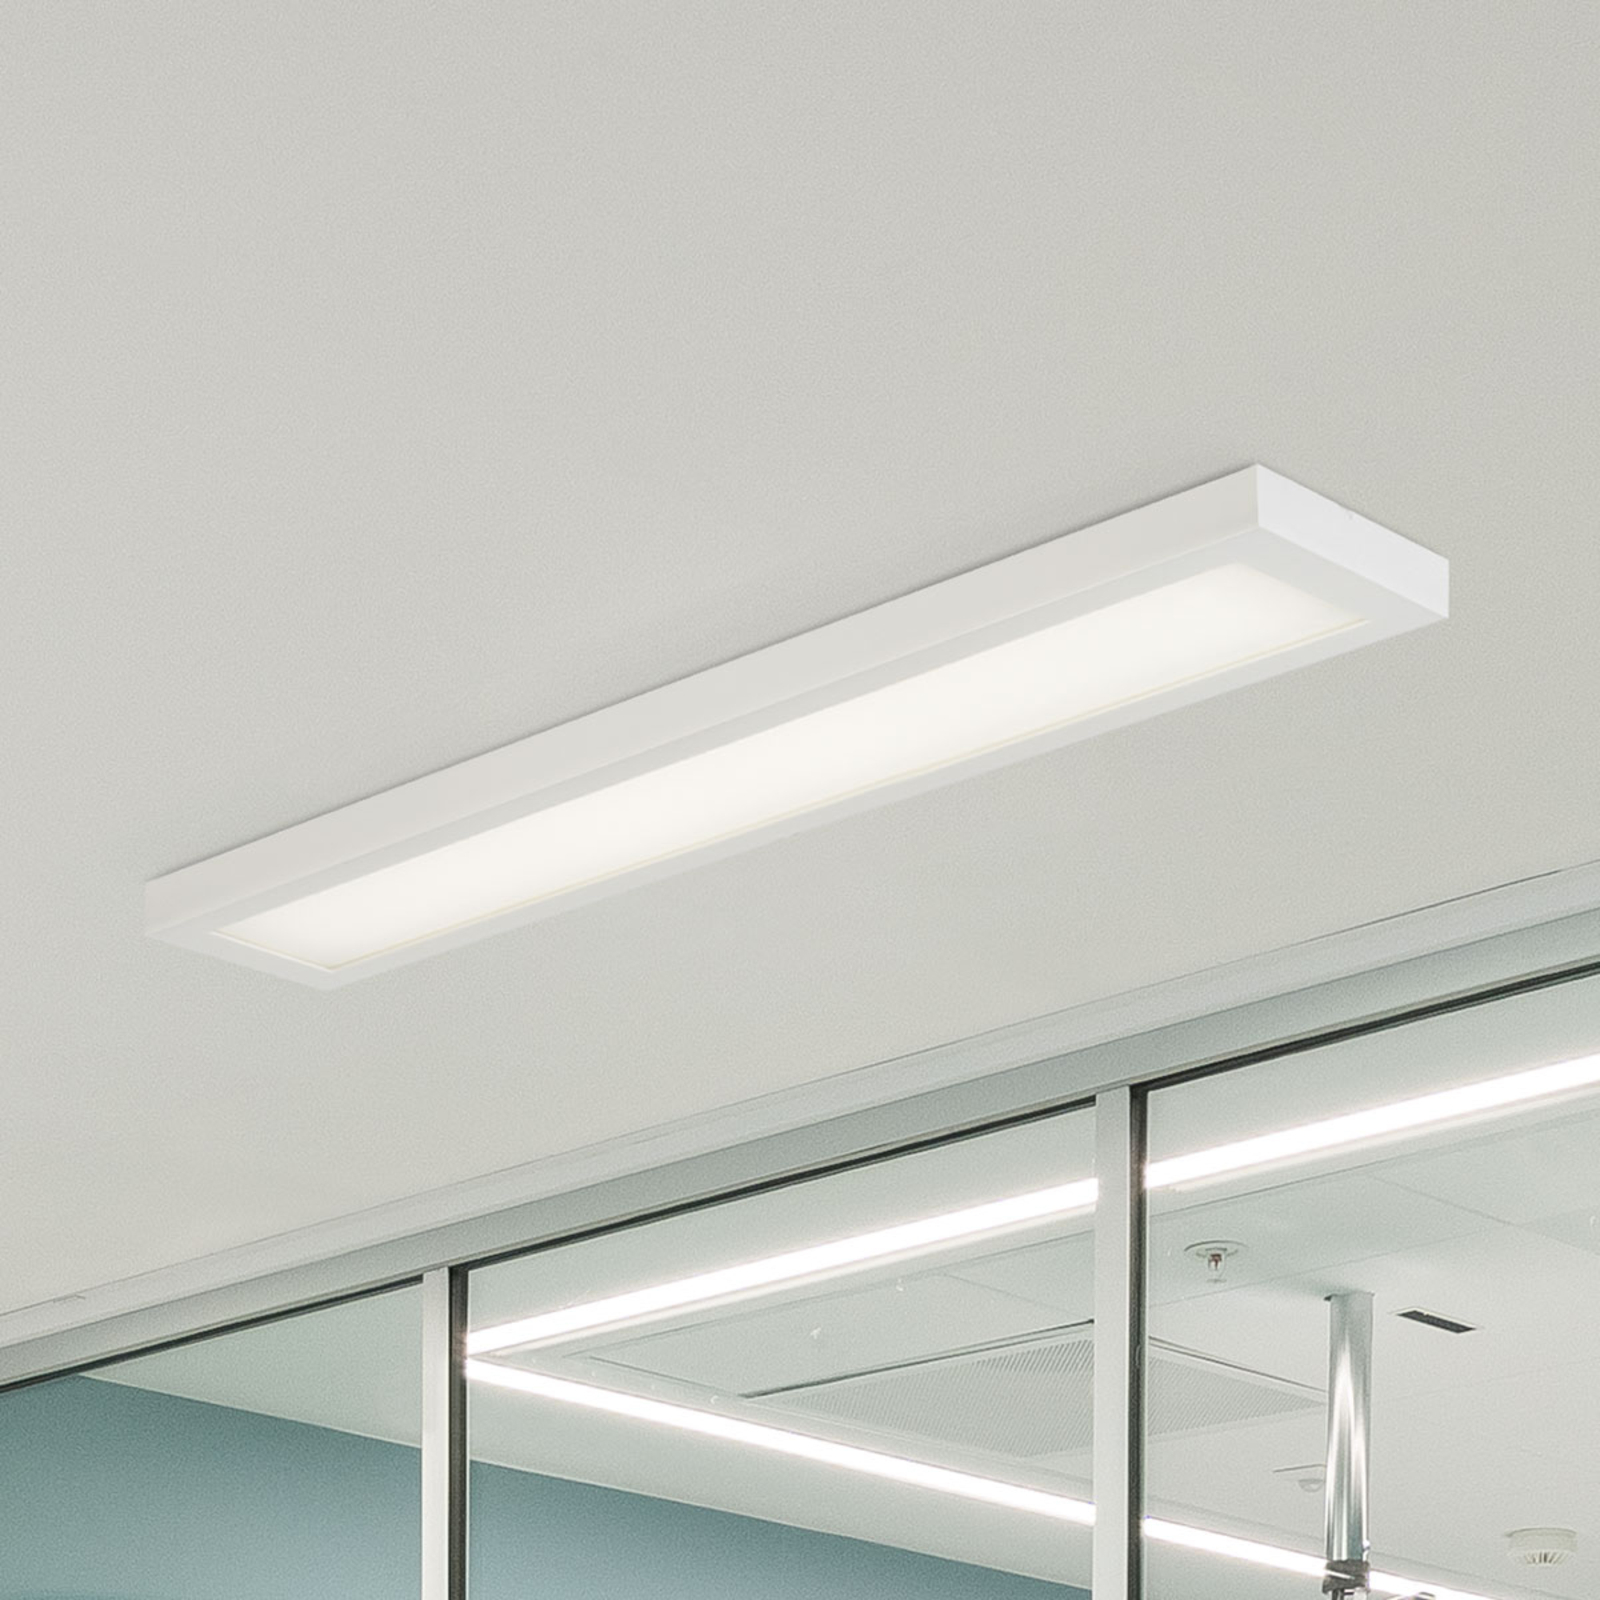 Φωτιστικό οροφής LED C70-S MP HF 117x27cm 4,212lm 840